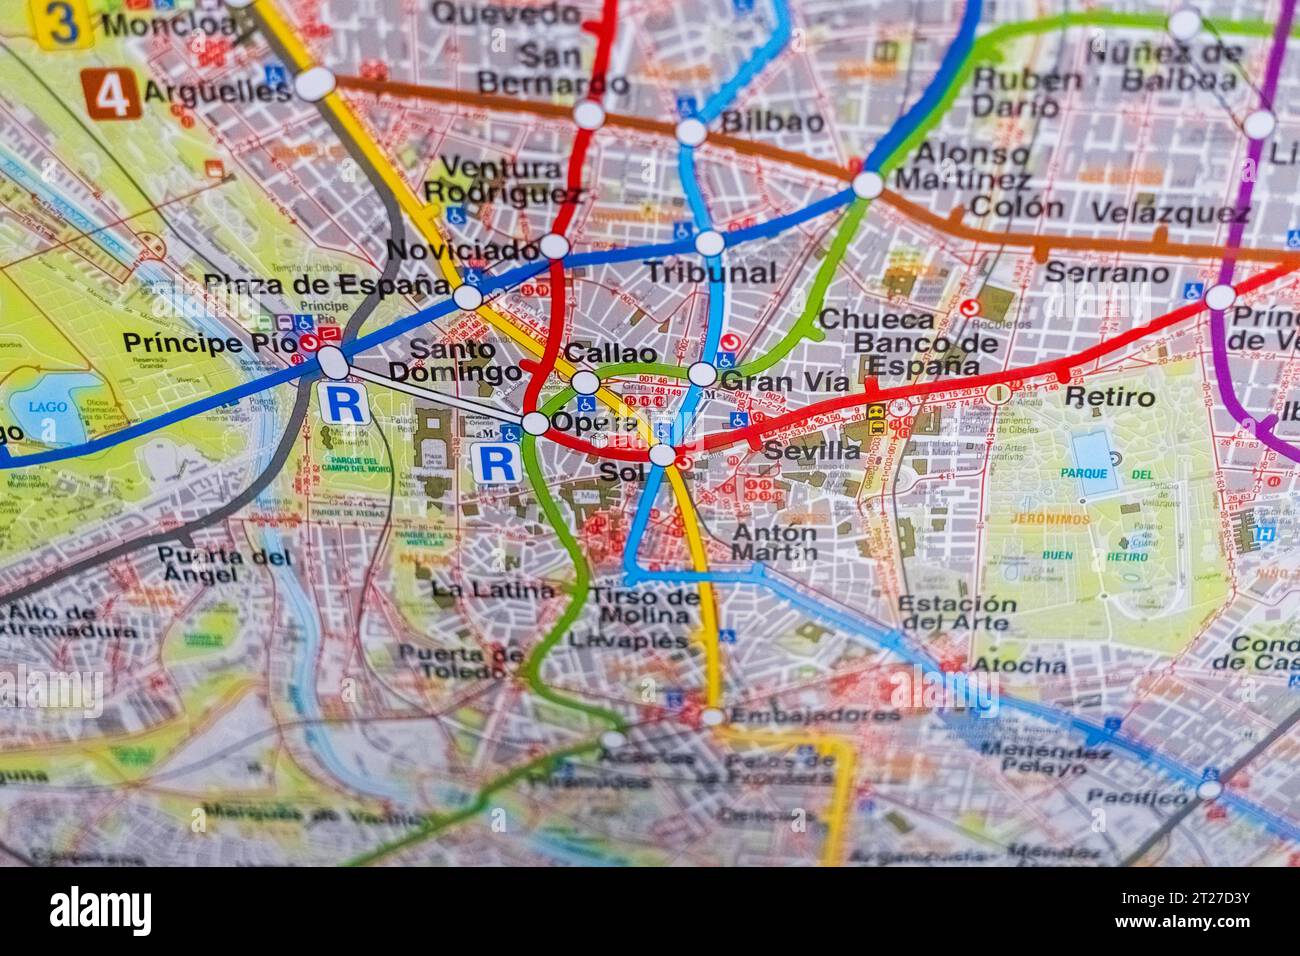 Madrid, Spagna - 10 ottobre 23: Dettaglio di una mappa della città di Madrid. Foto Stock